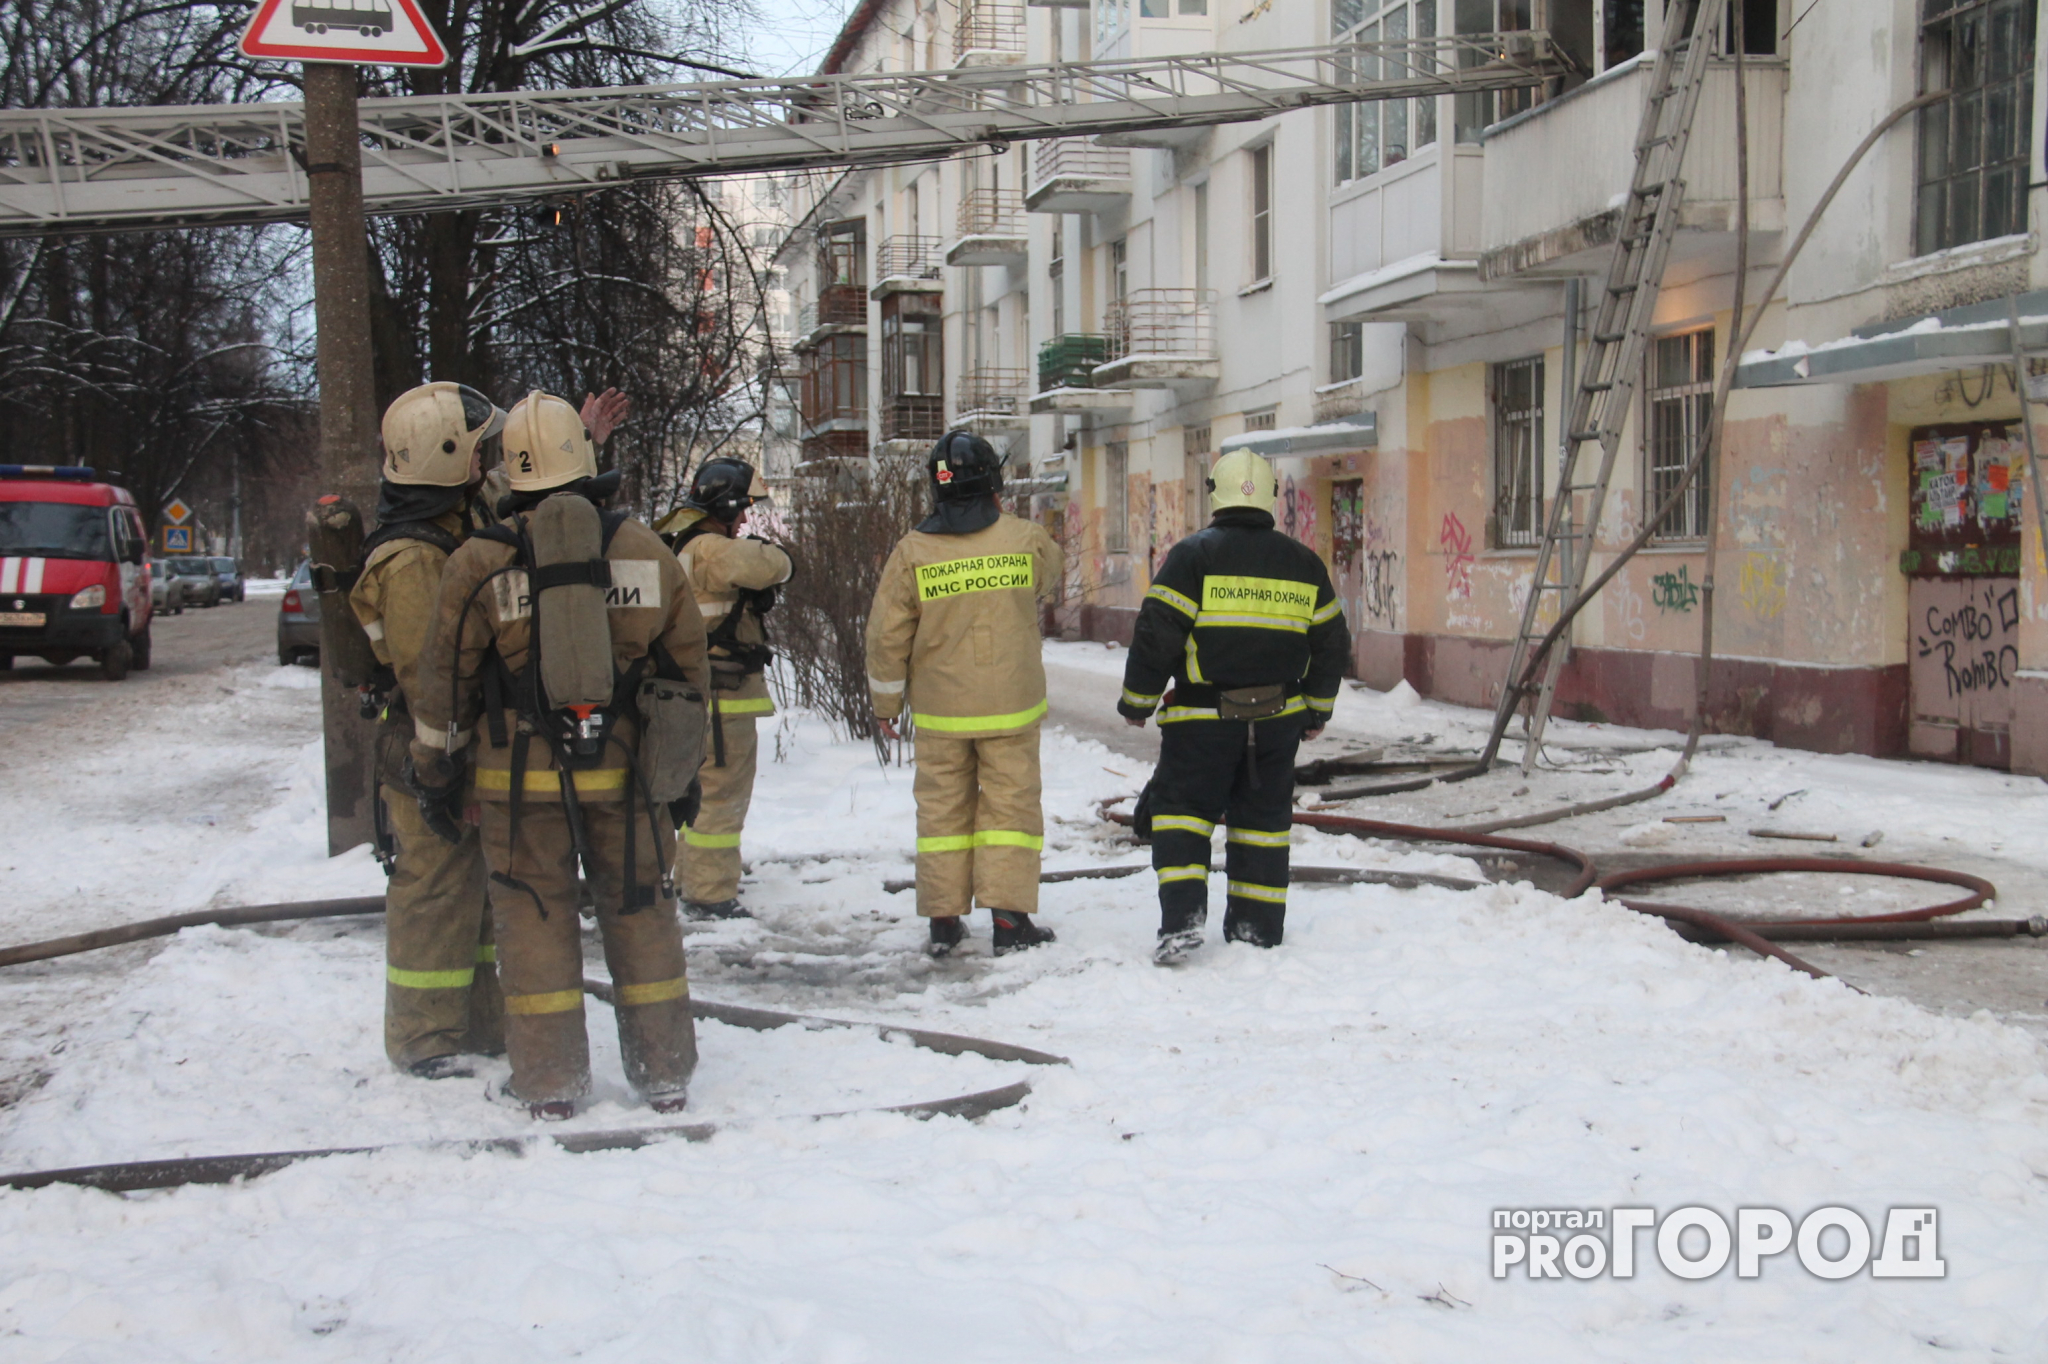 Из горящего дома в Ярославле спасли семь человек